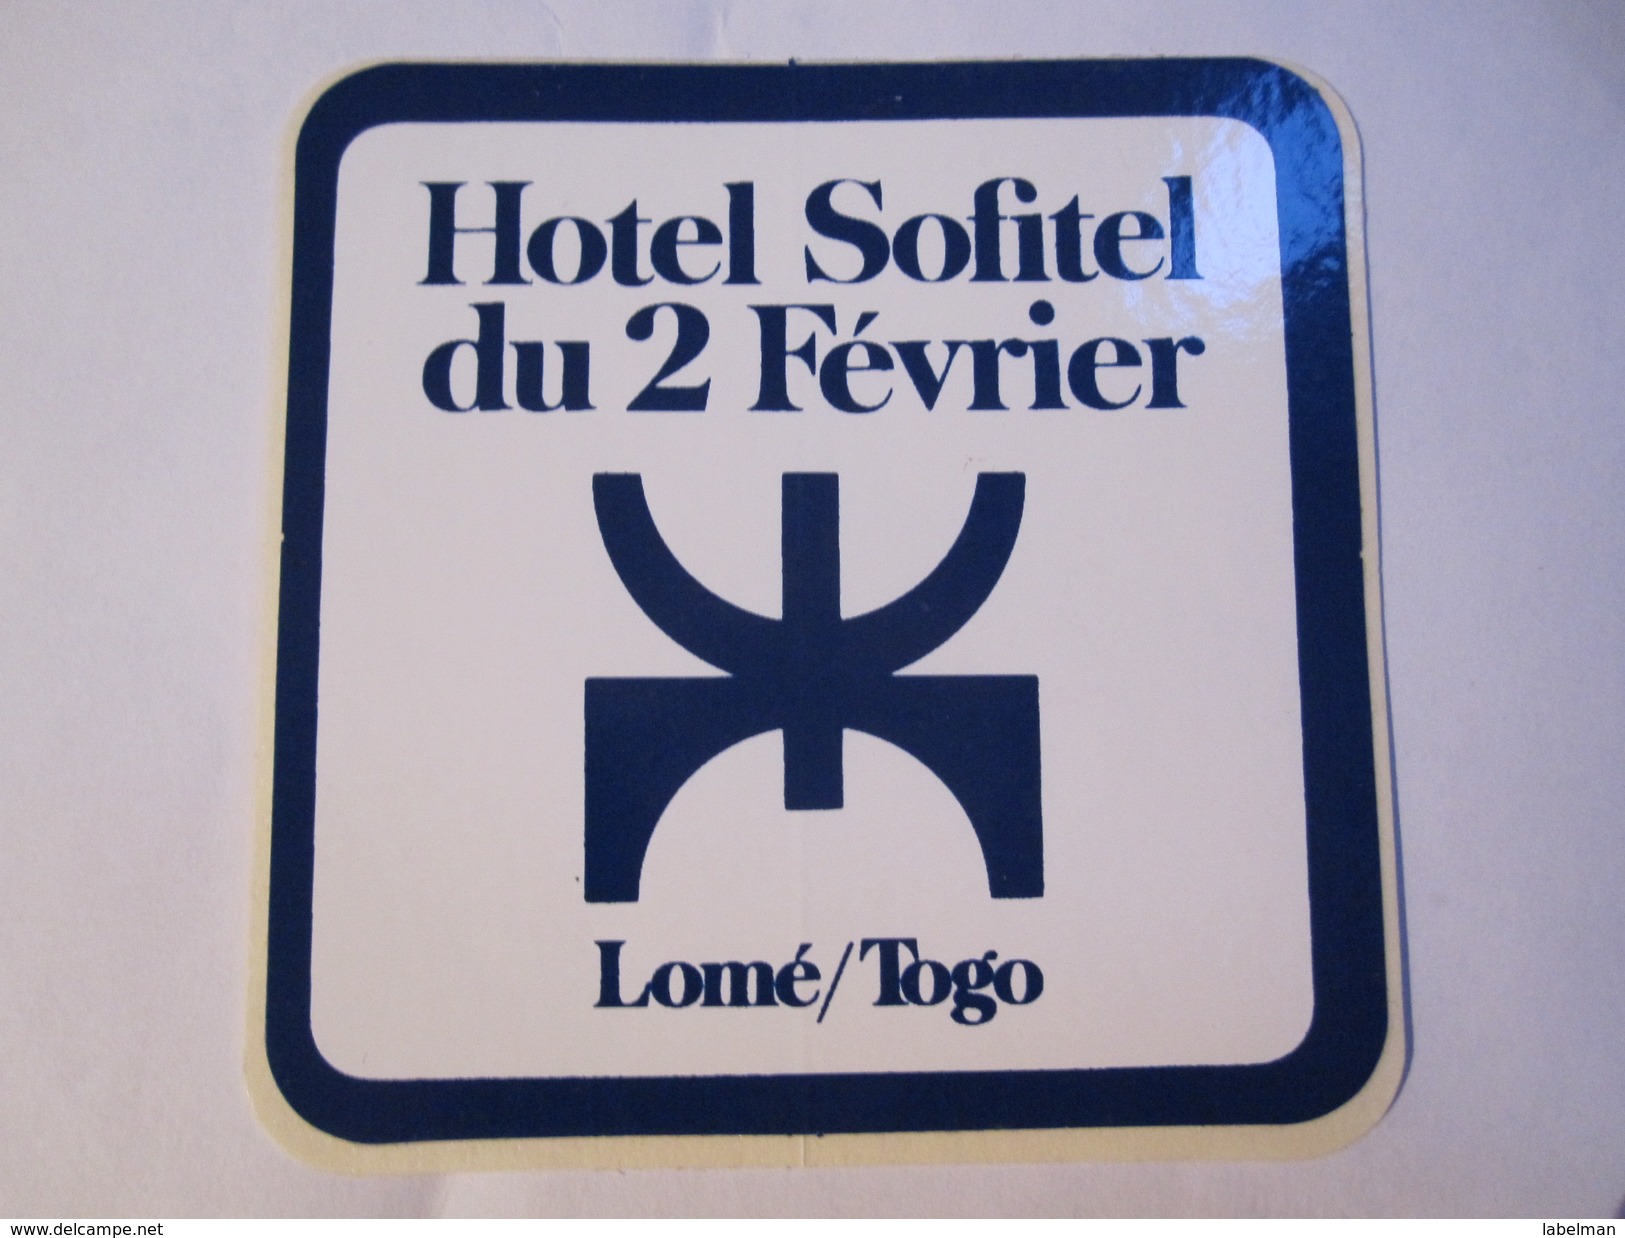 HOTEL MOTEL PENSION SOFITEL DU 2 FEVRIER LOME TOGO OLD TAG STICKER DECAL LUGGAGE LABEL ETIQUETTE AUFKLEBER - Hotel Labels